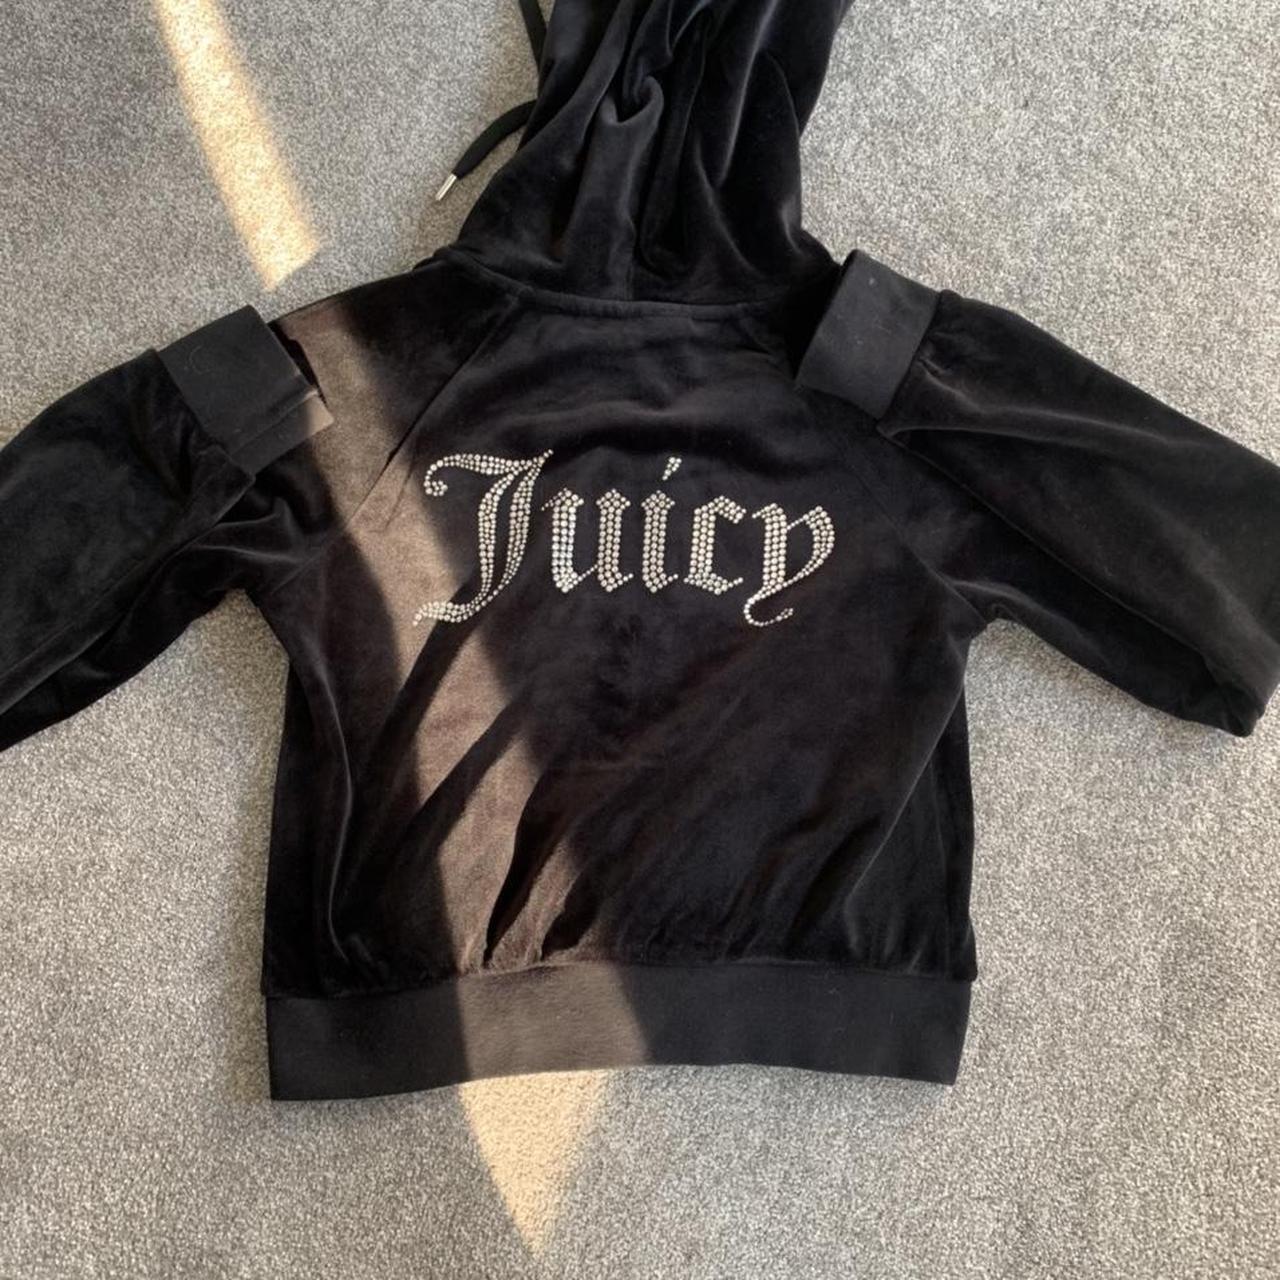 Urban outfitters juicy conture hoodie in black Size... - Depop